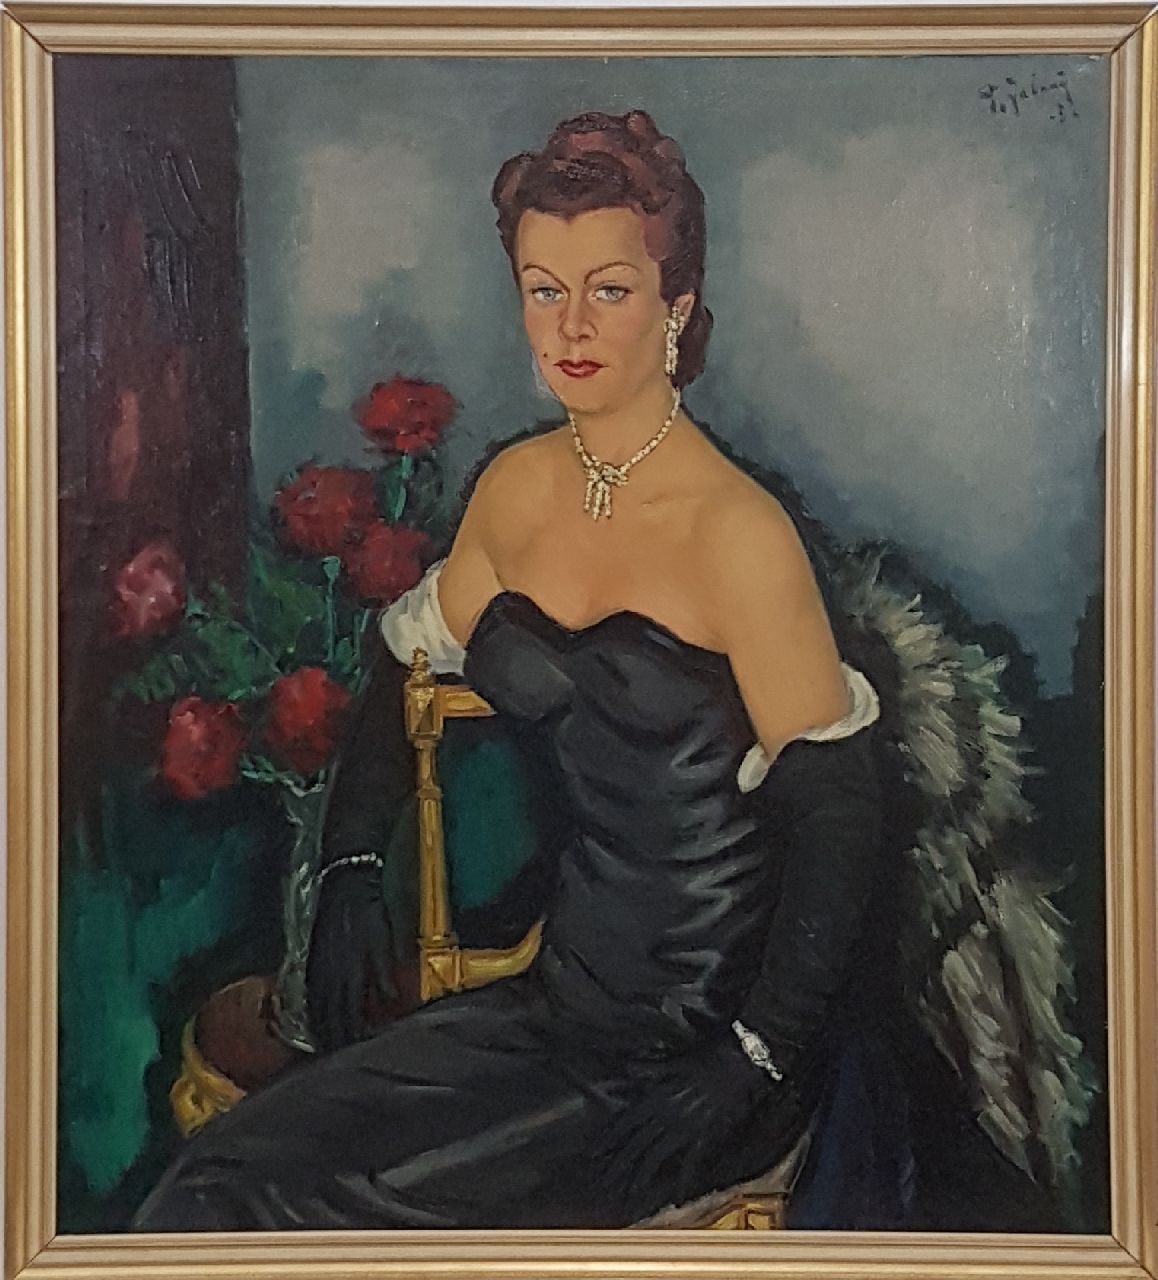 Jabaaij P.  | Piet 'Pleun' Jabaaij | Schilderijen te koop aangeboden | Portret van een vrouw in avondkleding, olieverf op doek 100,0 x 99,8 cm, gesigneerd rechtsboven en gedateerd '52, zonder lijst